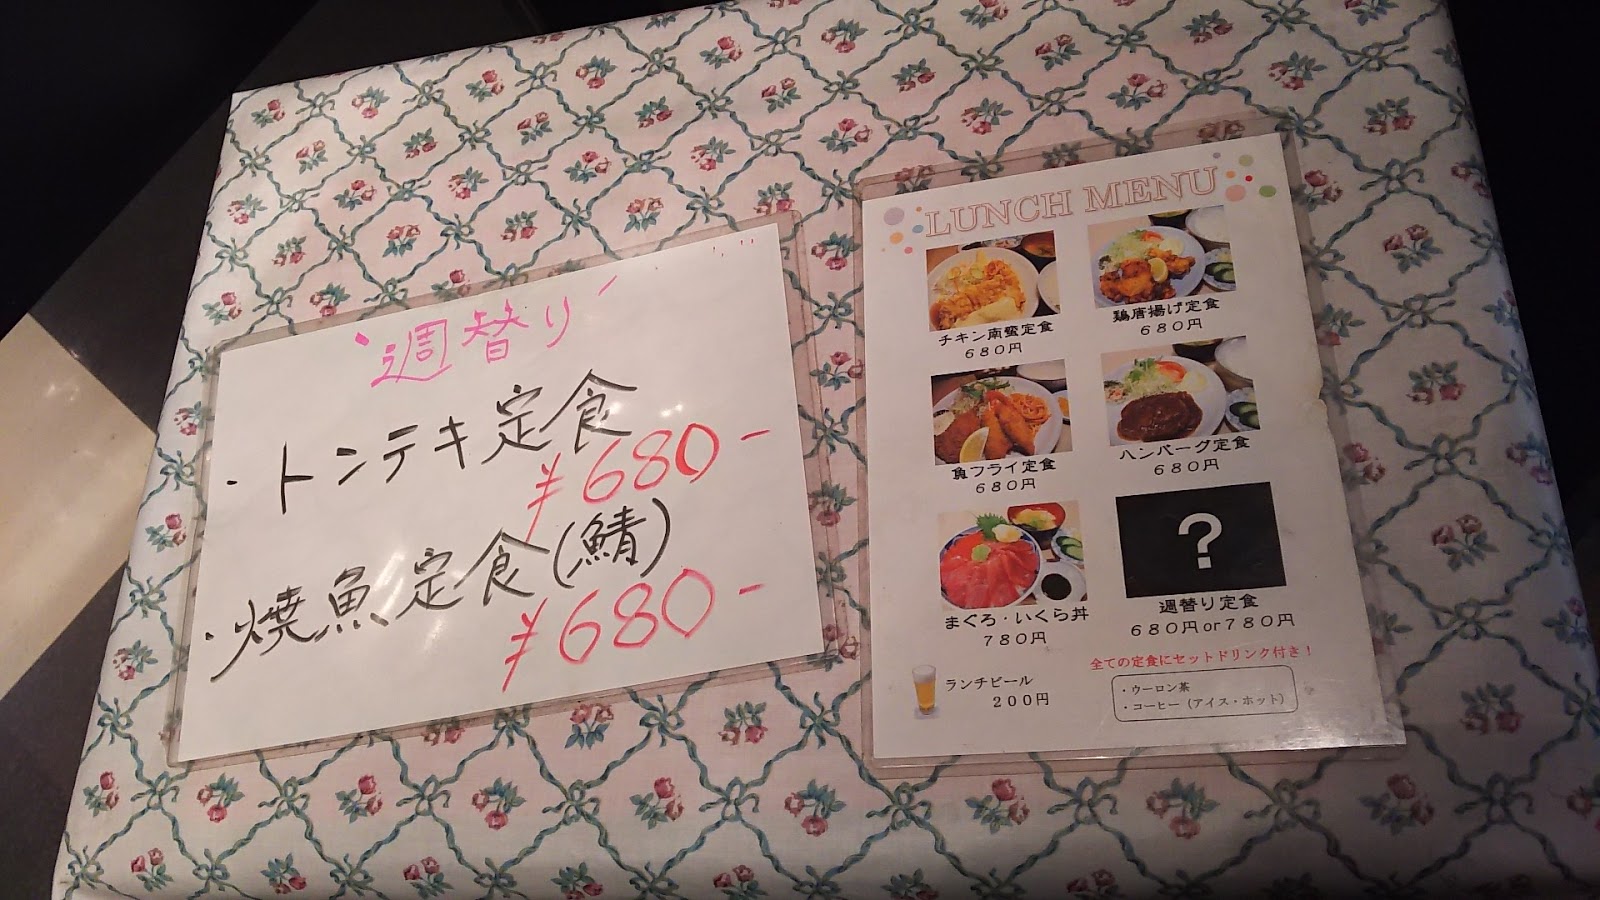 新宿 居酒屋dining Mr 三平 焼魚定食 新宿あたりのランチのブログ